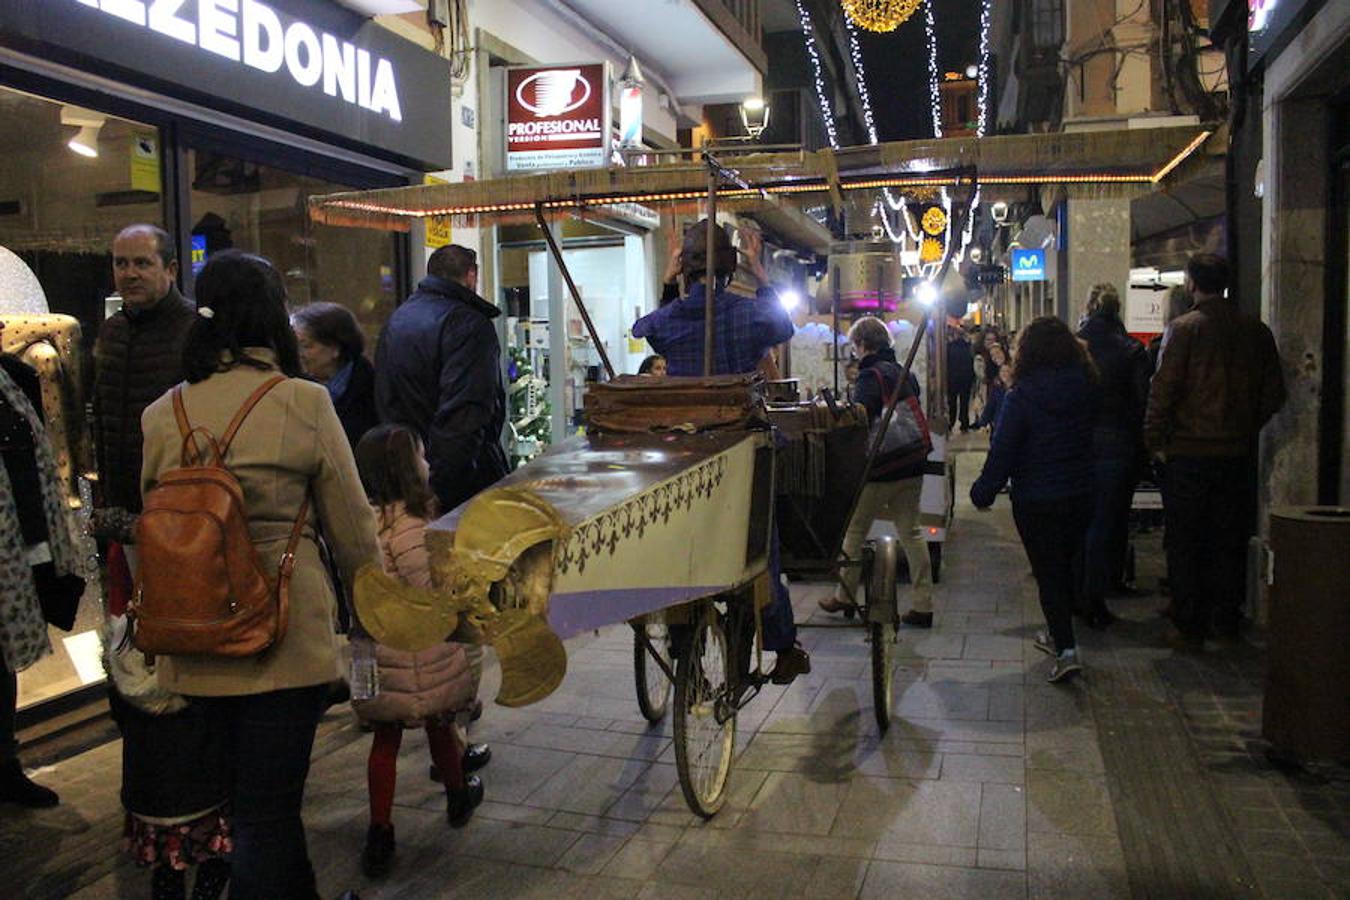 El 5 de diciembre a las 20.00h se encendió el árbol de la plaza Grande. Asmi y Zafra Solidario llevaron a cabo su Chocolatada y Mercado Artesano. Pasacalles y luces en otras plazas completaron la noche.